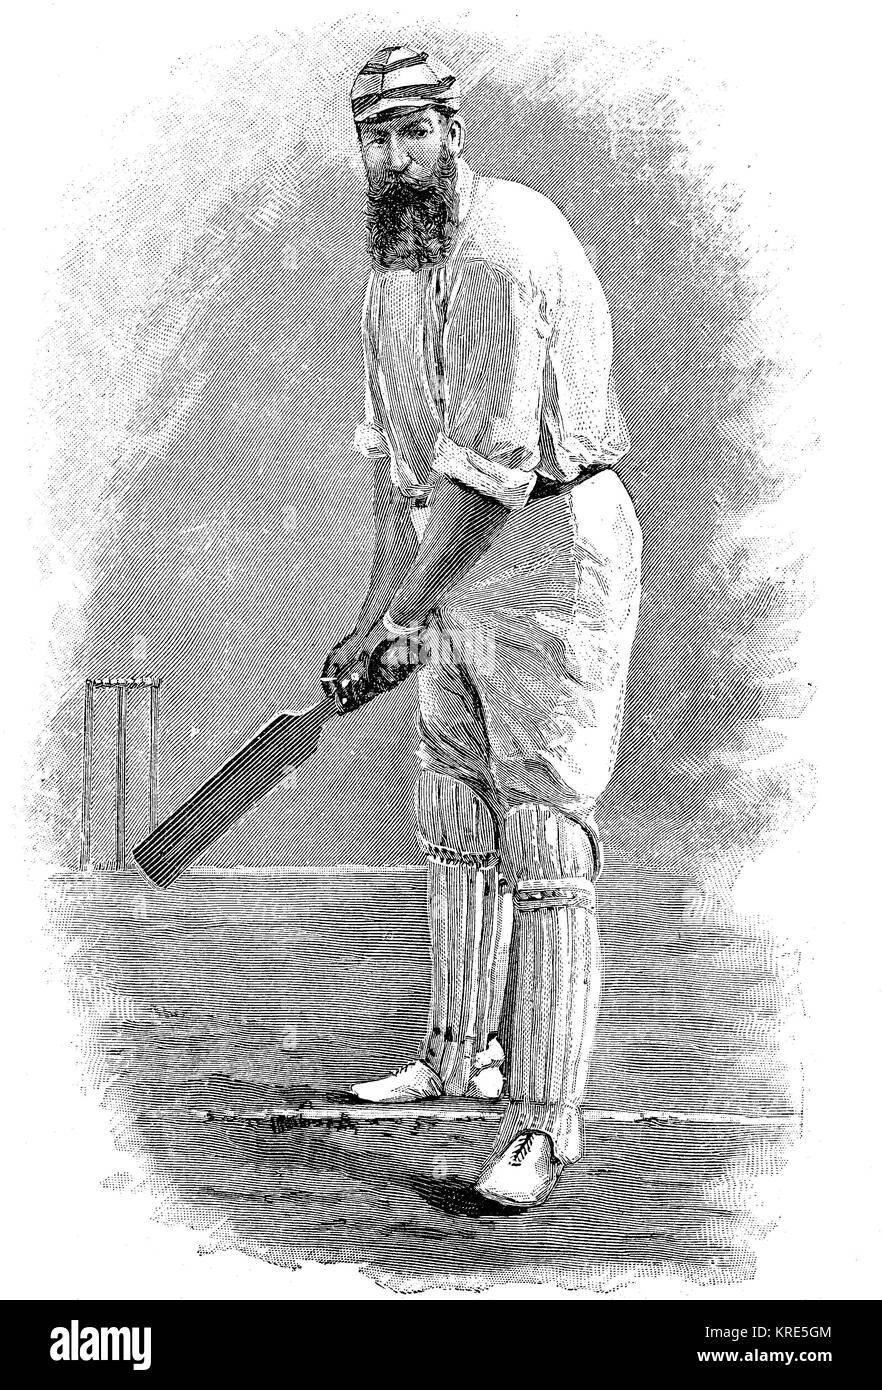 L'uomo durante la corsa, inglese giocatore di cricket, uomo in abiti tipici e atteggiamento di gioco, c. 1870, digital Riproduzione migliorata di una xilografia dall'anno Foto Stock